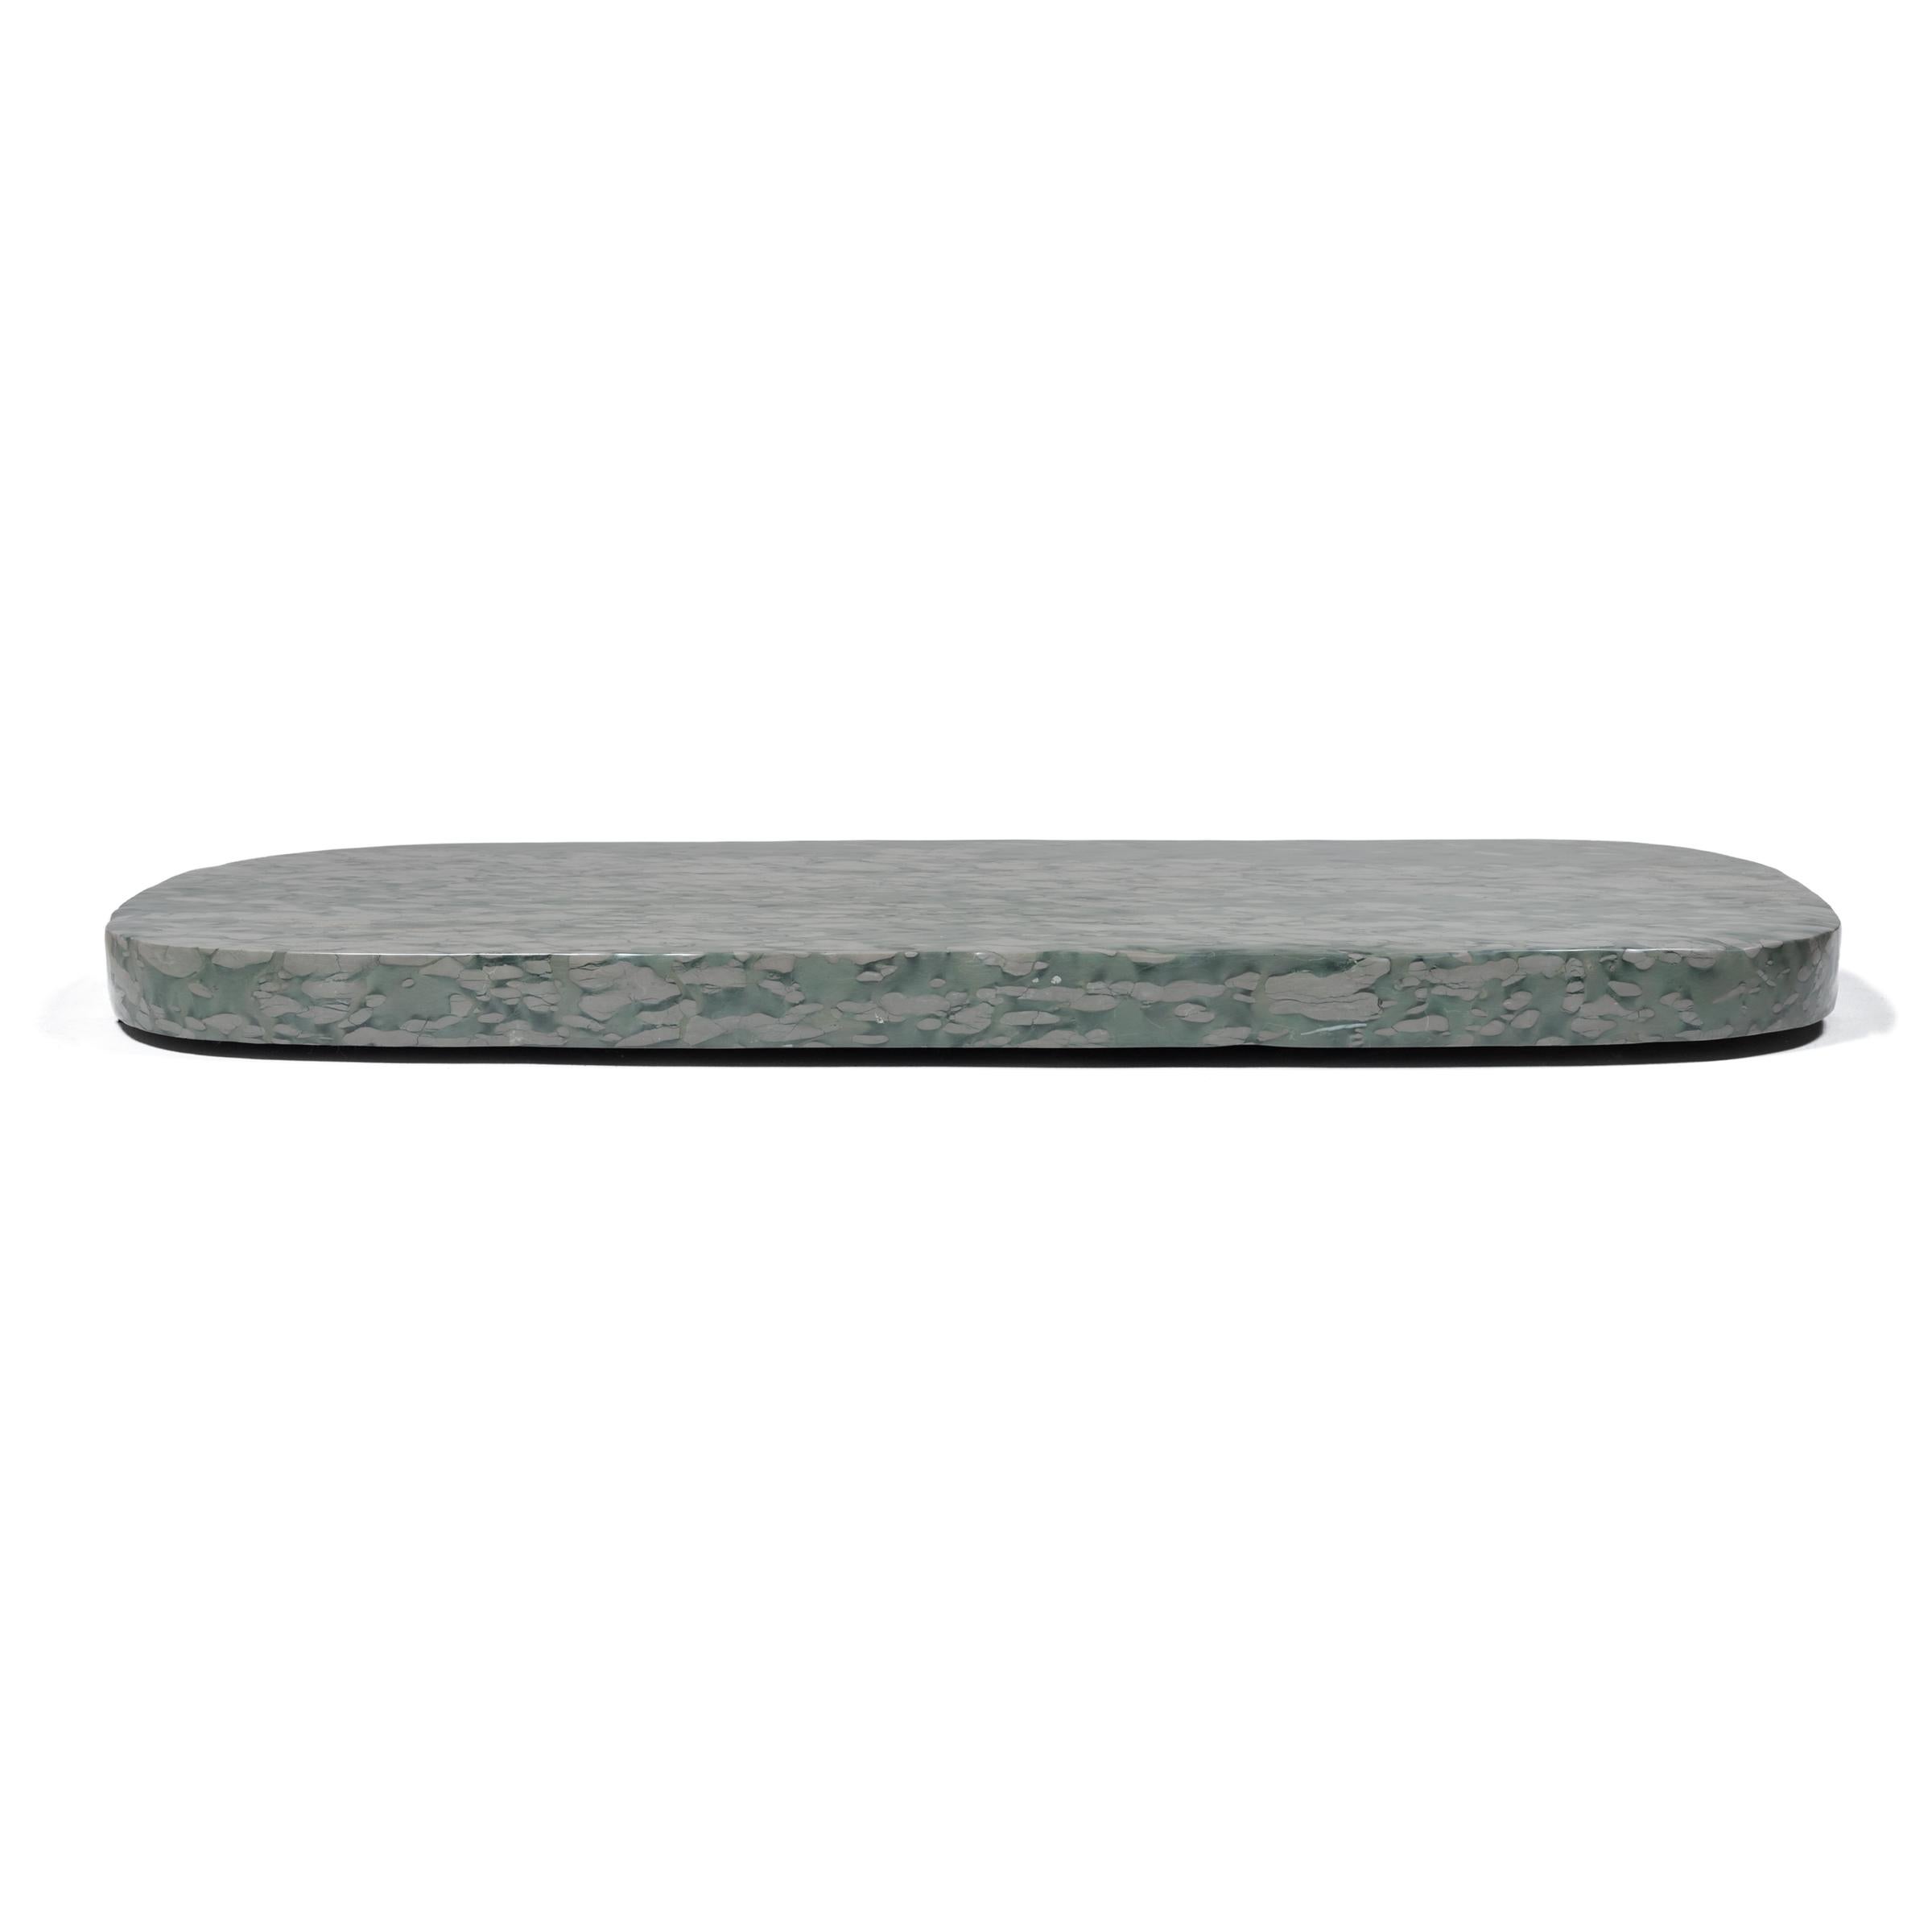 Diese ausladende Steinplatte besteht aus Zhenzhu-Stein, einem Kalksteinkonglomerat, das aus dem Tai-See in der Provinz Jiangsu gewonnen wird. Gesprenkelt mit fast malerischen Farbklecksen wurde der begehrte Stein besonders von Gelehrten des 16. bis